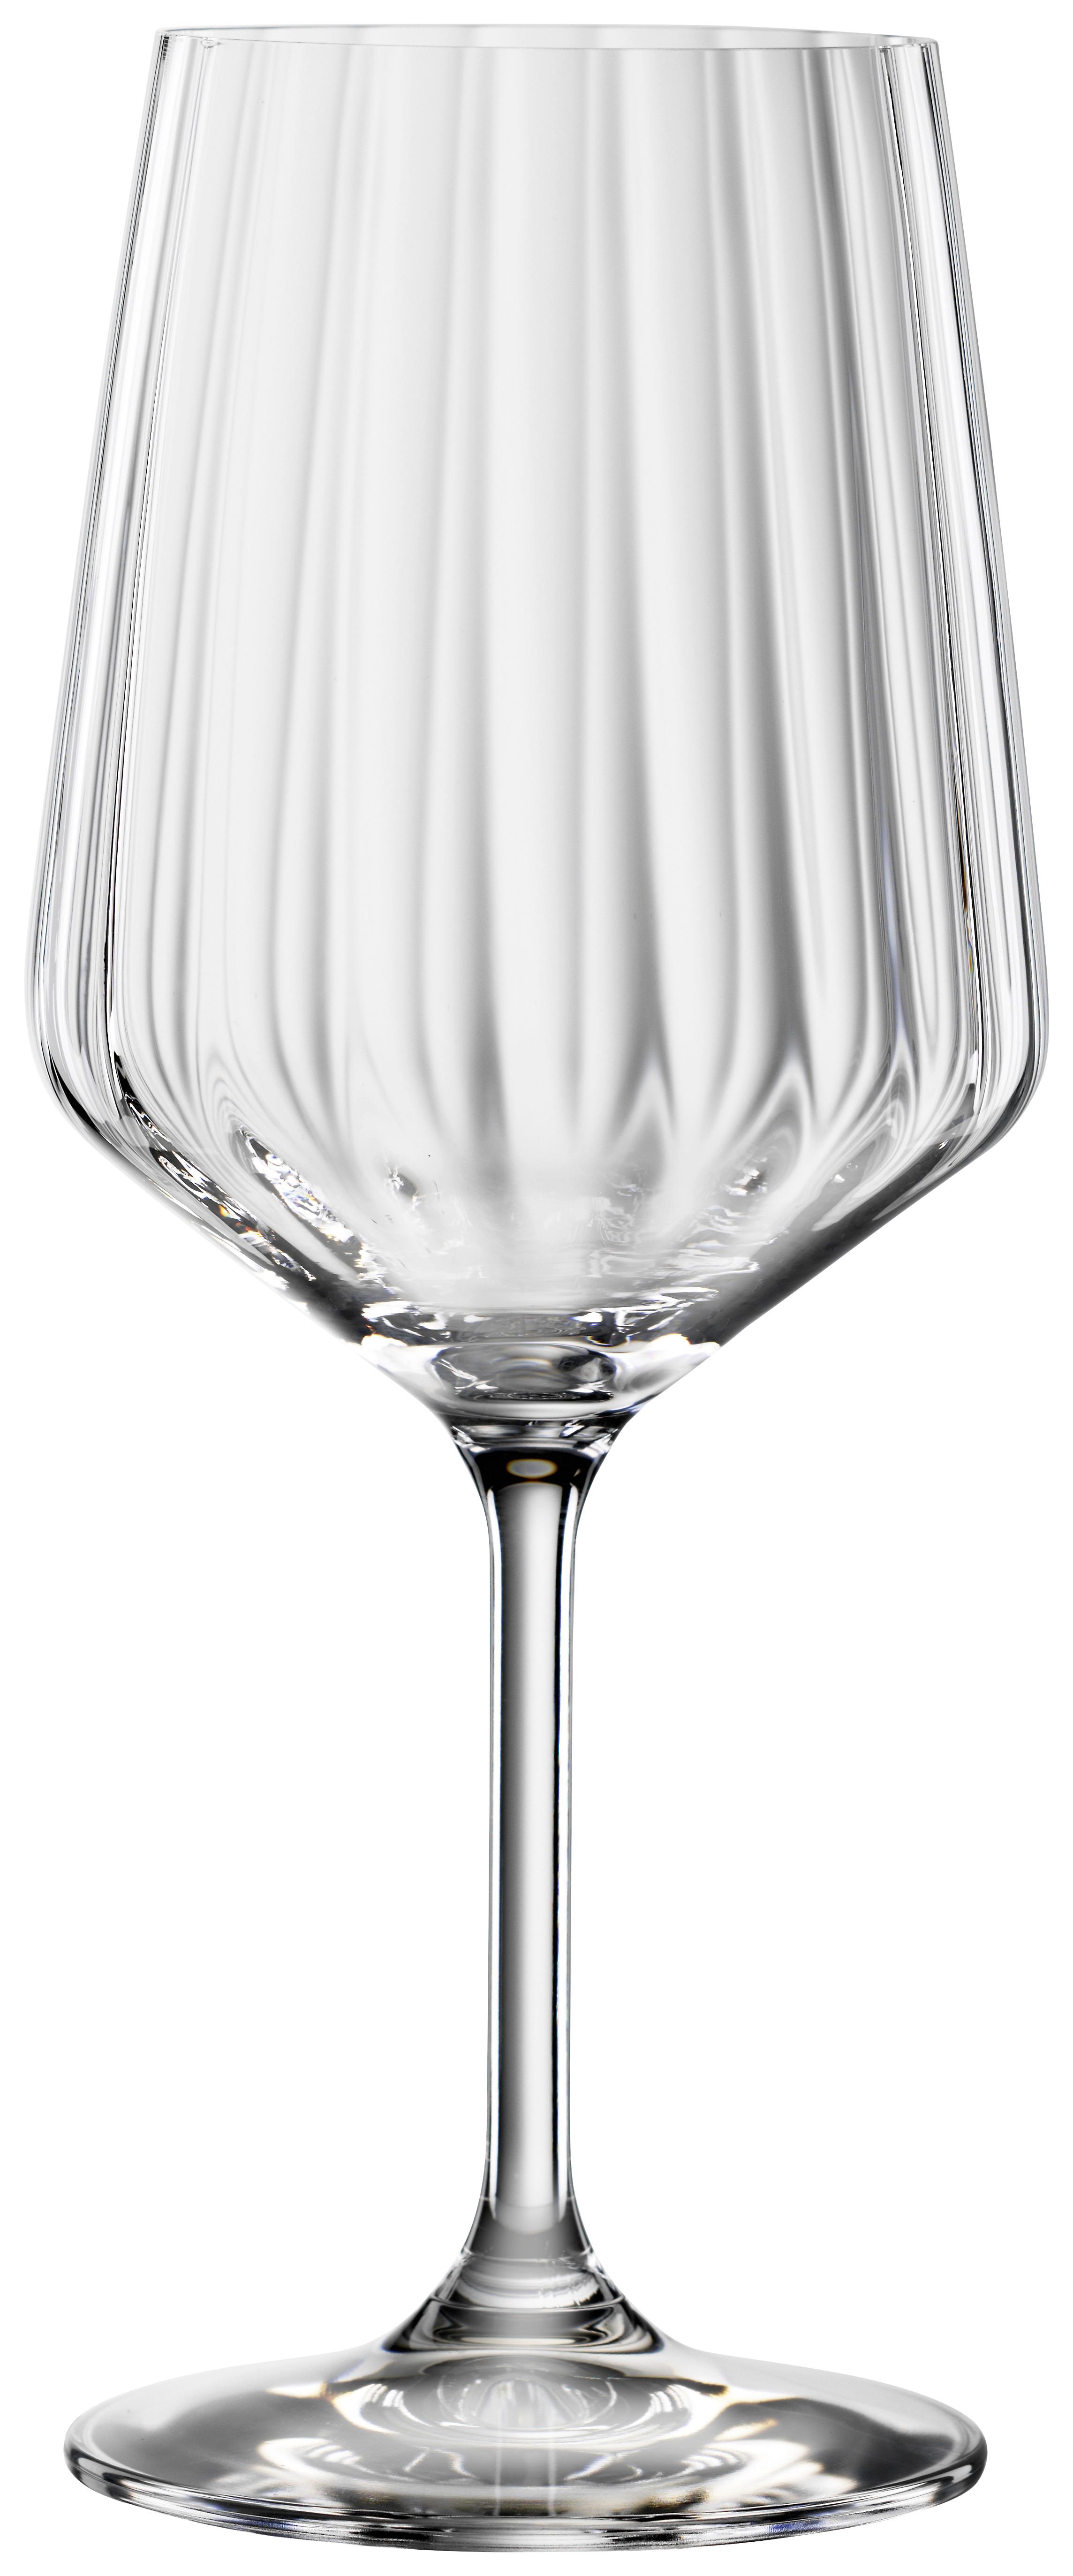 Rotweinglas Lifestyle, 4-teilig - Klar, MODERN, Glas (9,6/9,6/22,5cm) - Spiegelau